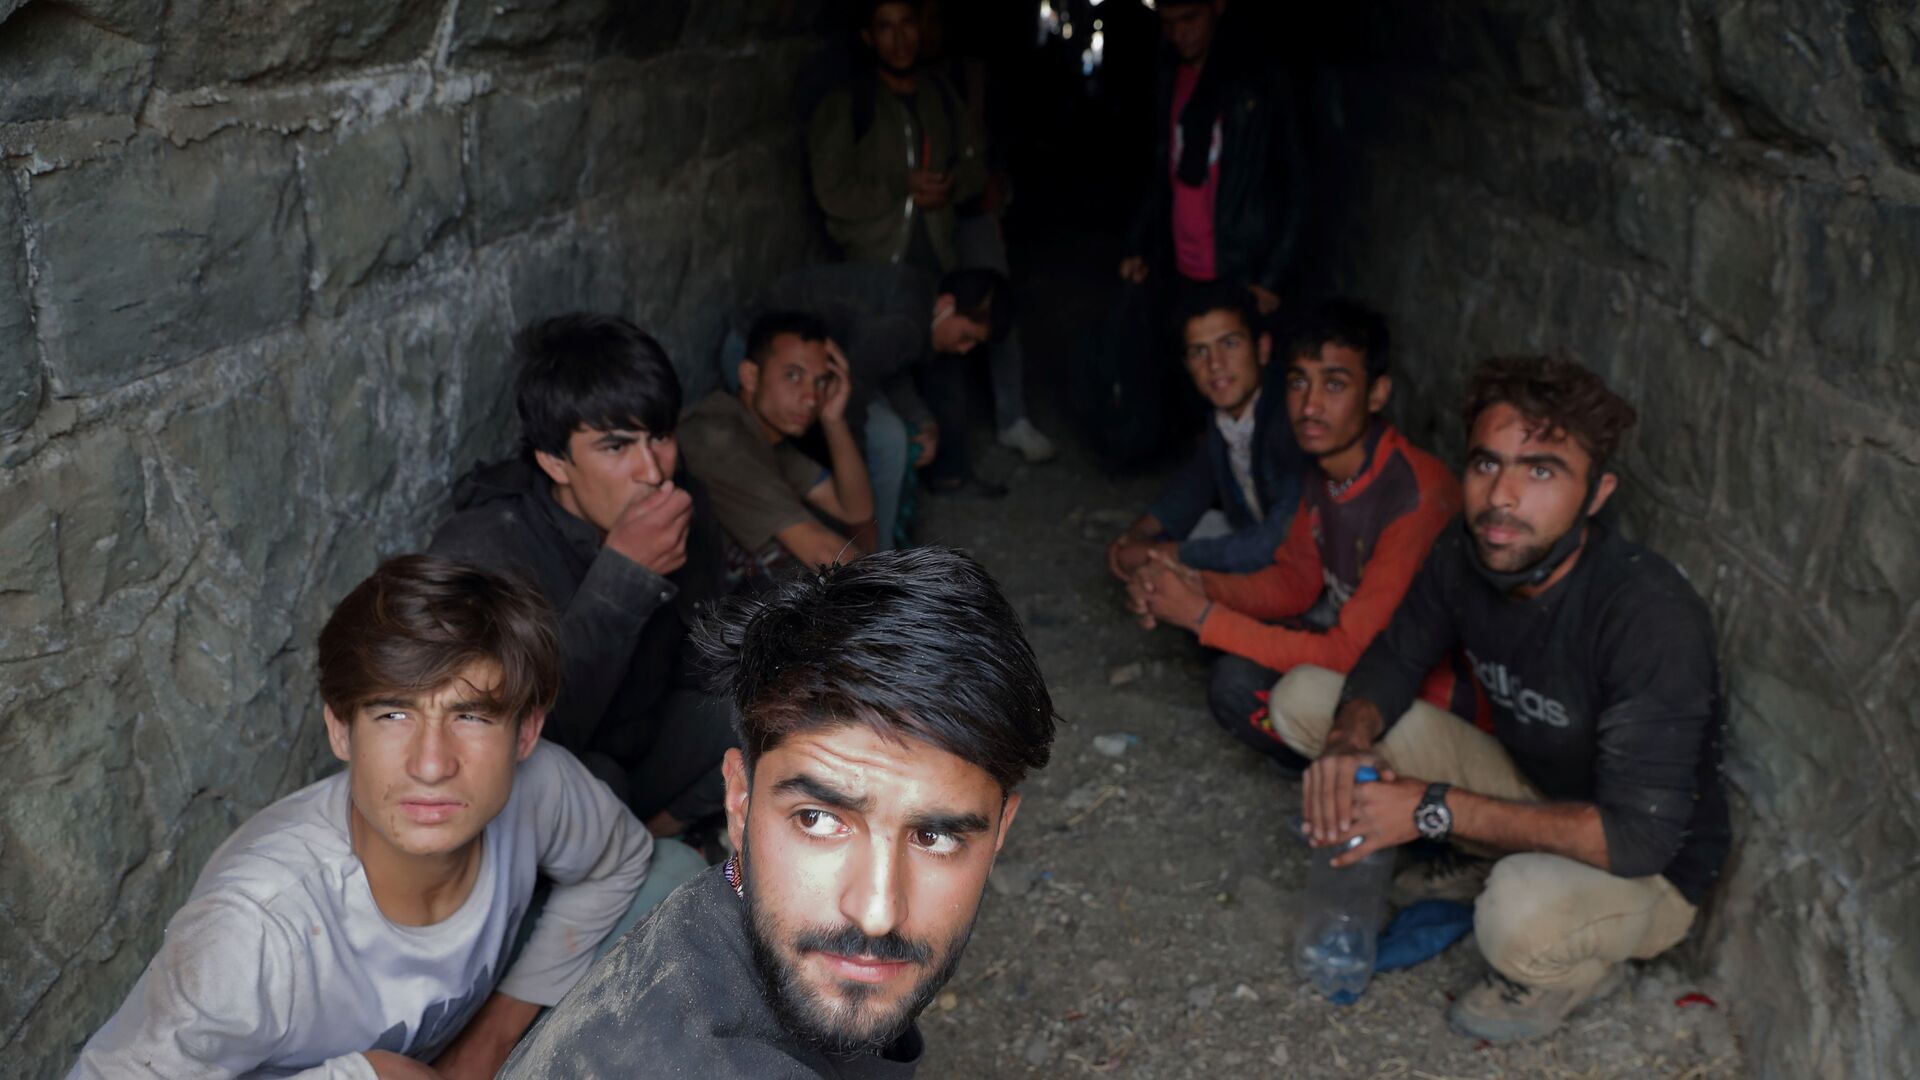 Афганские мигранты прячутся в туннеле под железнодорожными путями после незаконного перехода в Турцию из Ирана, недалеко от Татвана, Турция - Sputnik Таджикистан, 1920, 21.11.2021